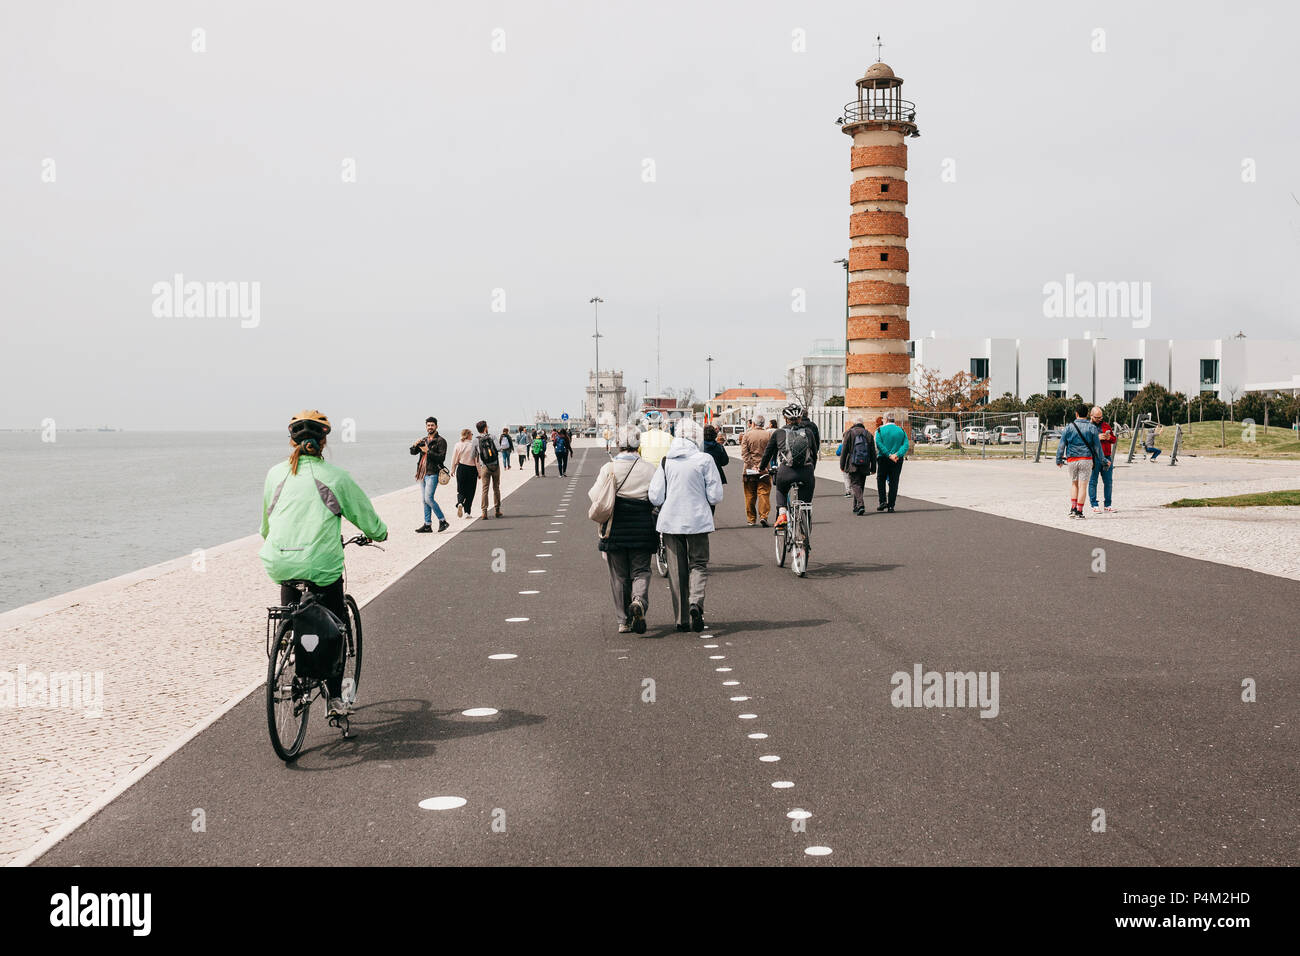 Lisbonne, juin 18, 2018 : promenade le long de la promenade dans la région de Belem. Certaines personnes de la bicyclette. La vie ordinaire Banque D'Images